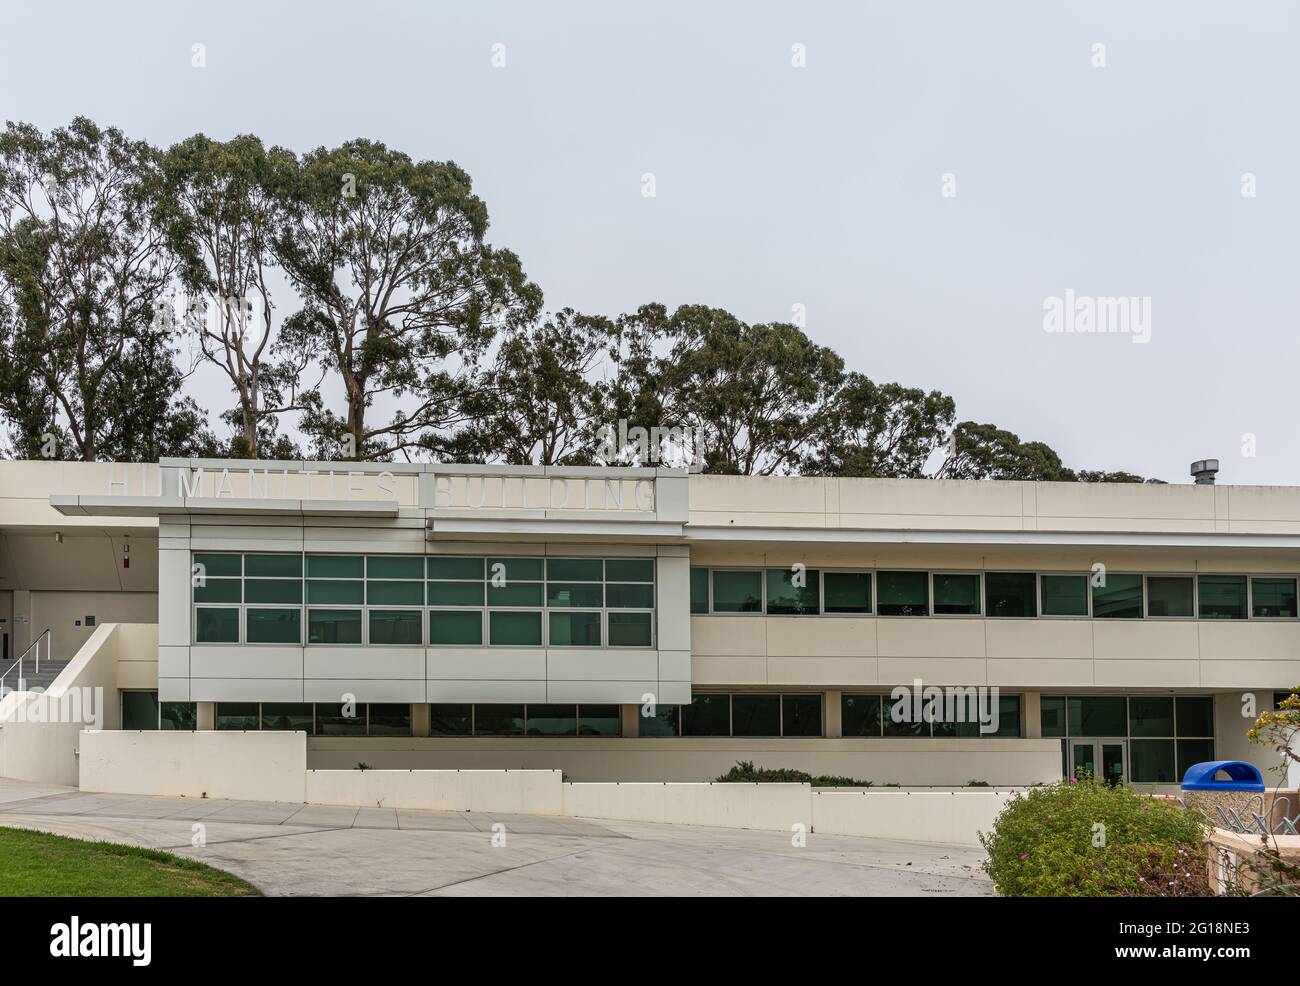 Santa Barbara, CA, USA - 2. Juni 2021: City College-Einrichtungen. Weißes geisteswissenschaftliches Gebäude mit Namen, der fast unsichtbar ist, da kein Farbunterschied besteht. Hoher Baum Stockfoto